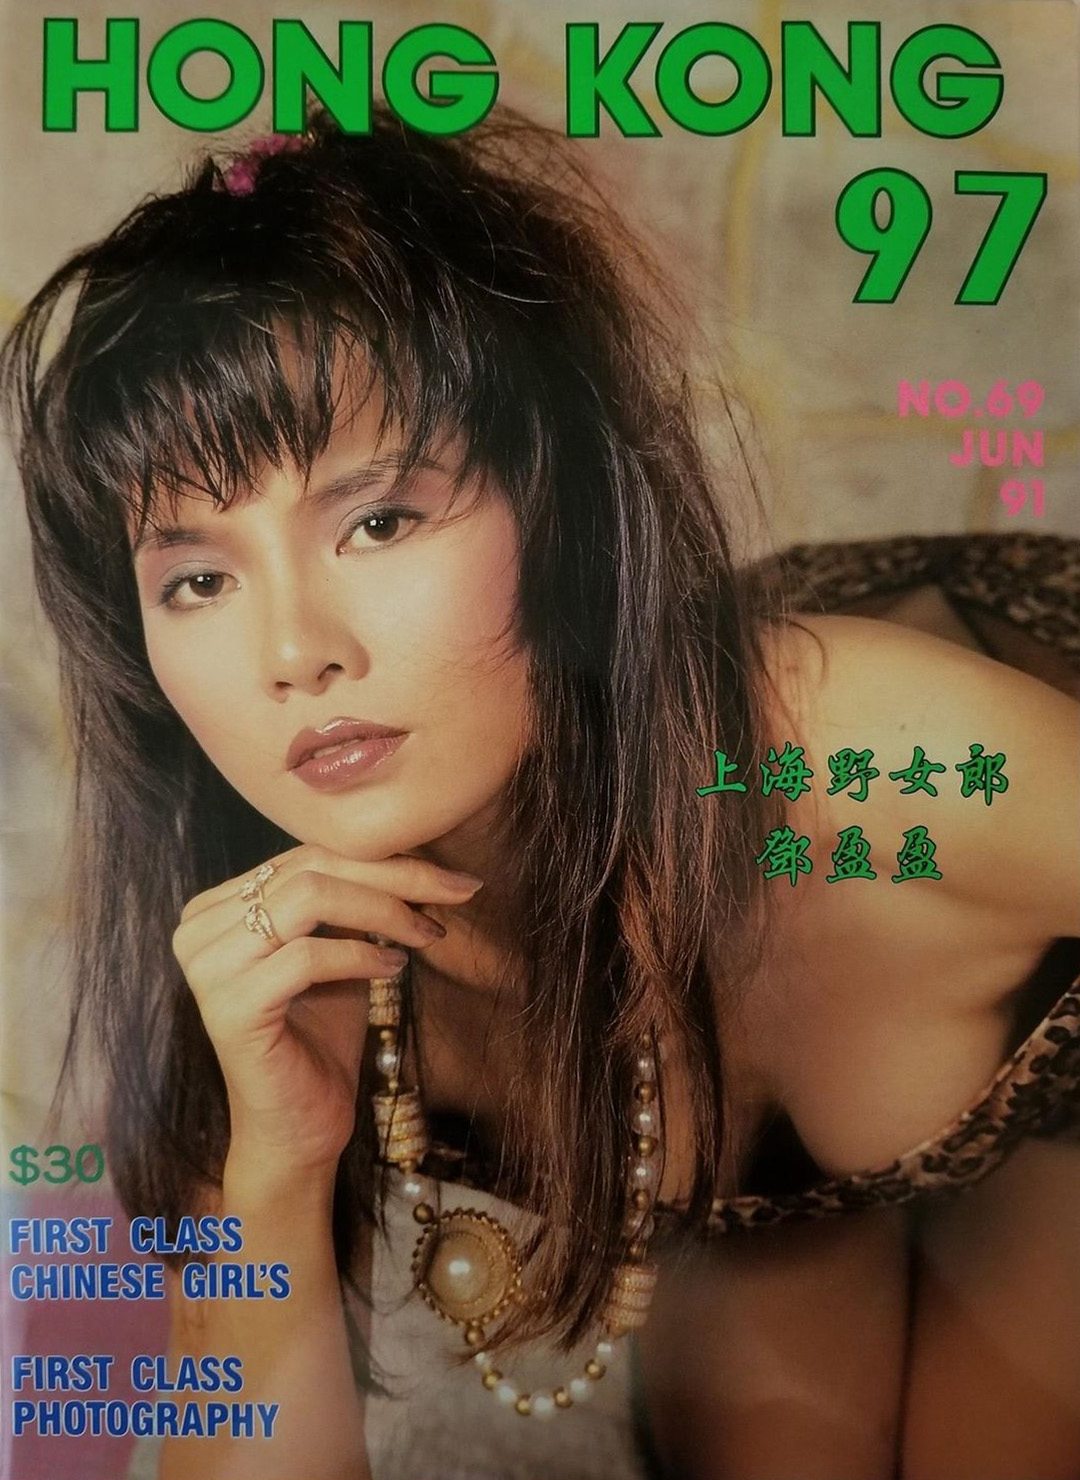 Hong Kong 97 # 69 magazine back issue Hong Kong 97 magizine back copy 